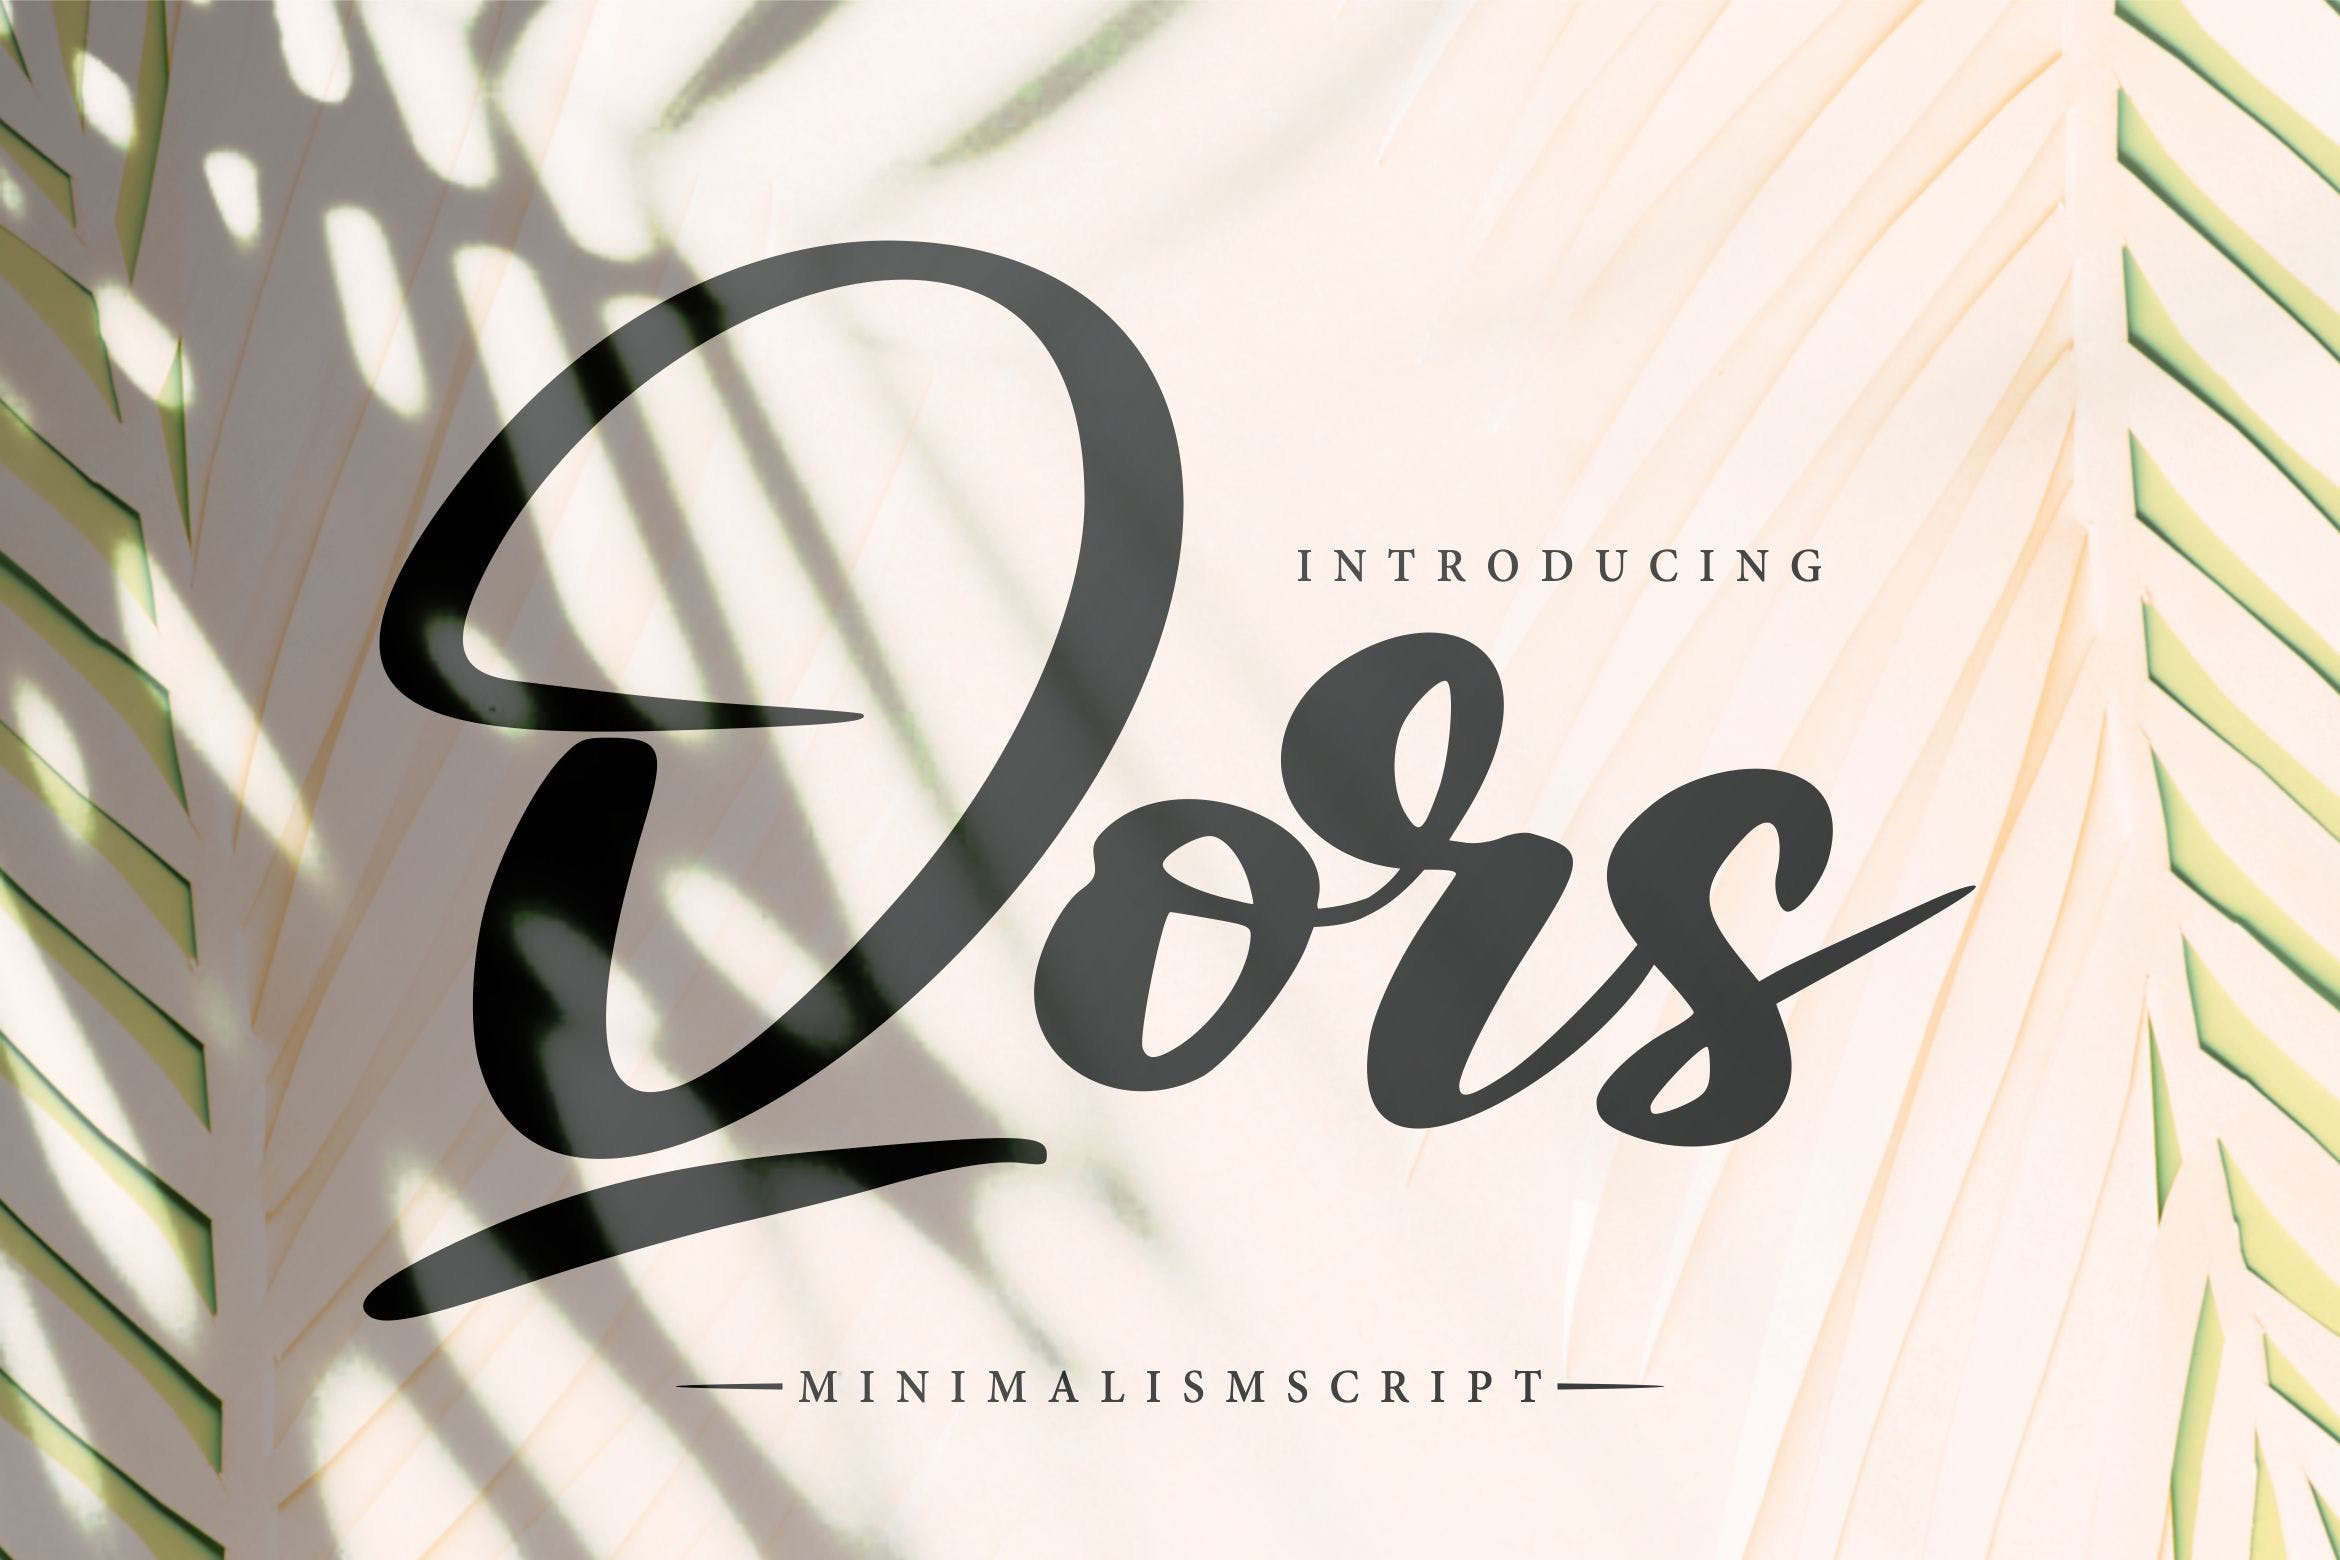 极简主义排版设计风格英文书法字体素材库精选 Qors | Minimalism Script Font插图